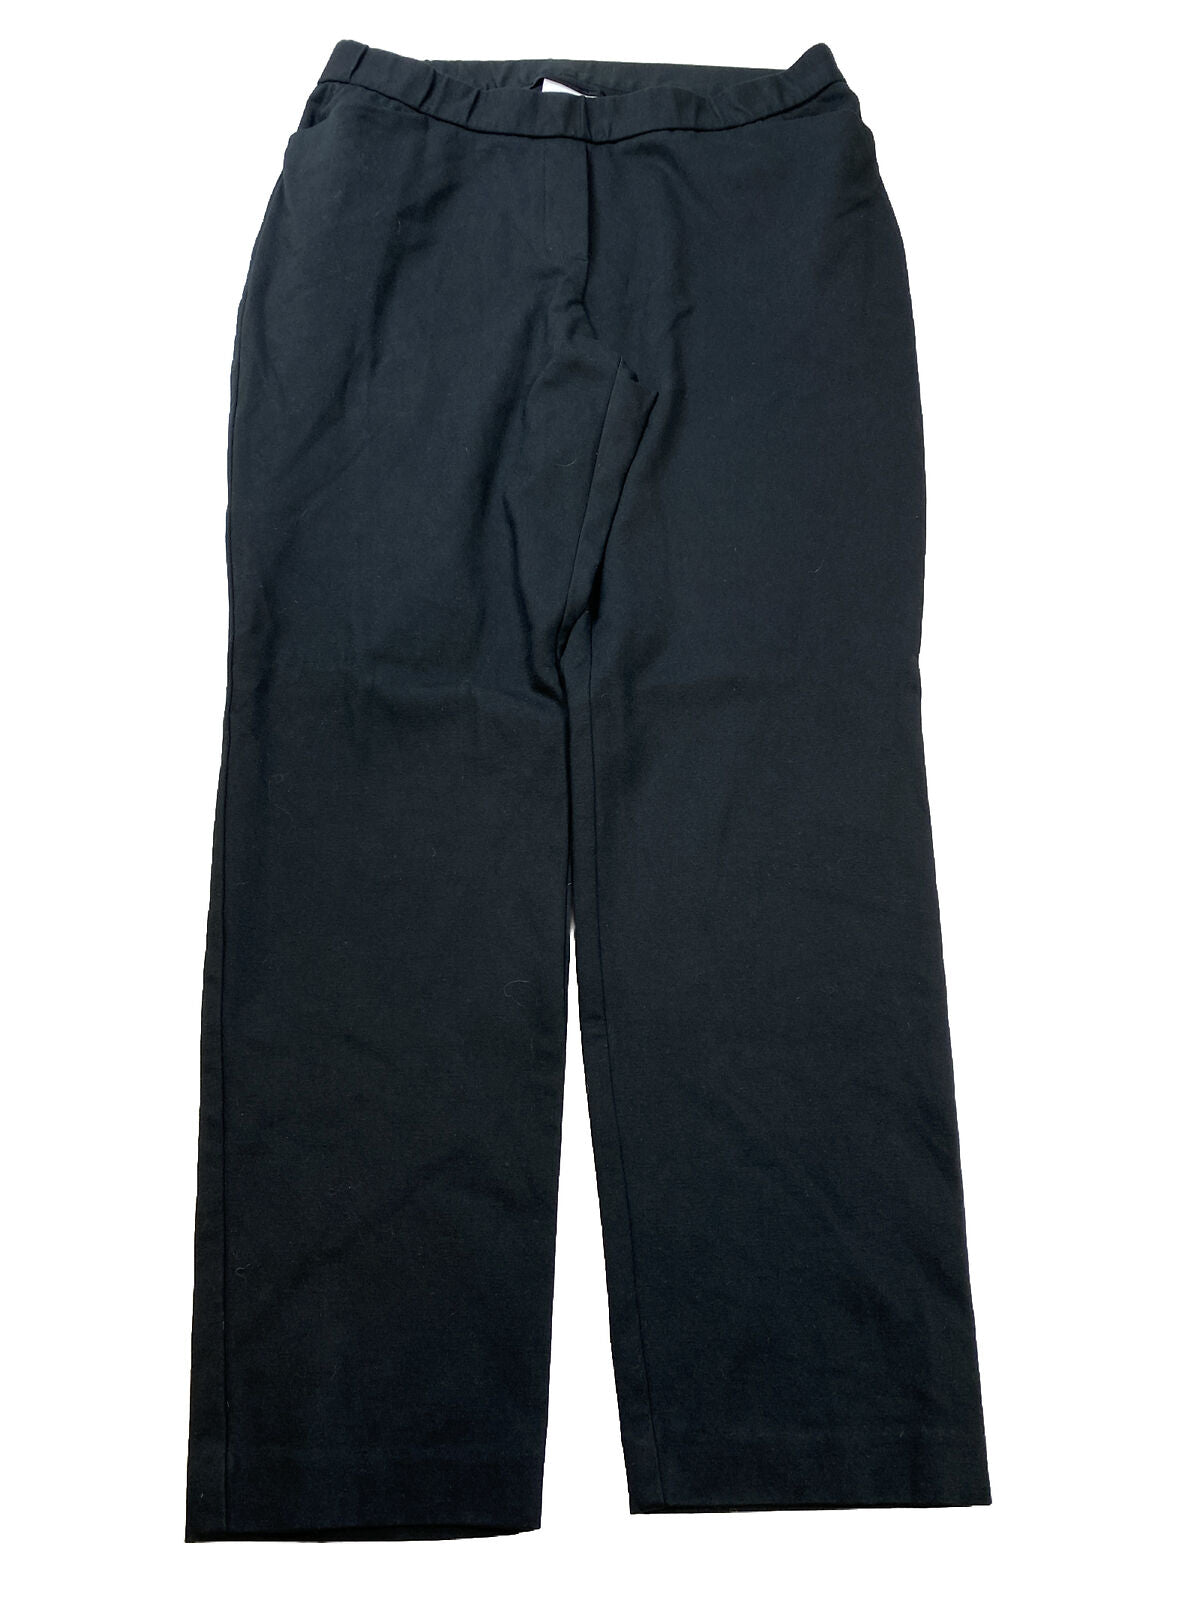 J Jill Ponte Slim Leg Pants Stretch Knit Women's Size L Gray Pull